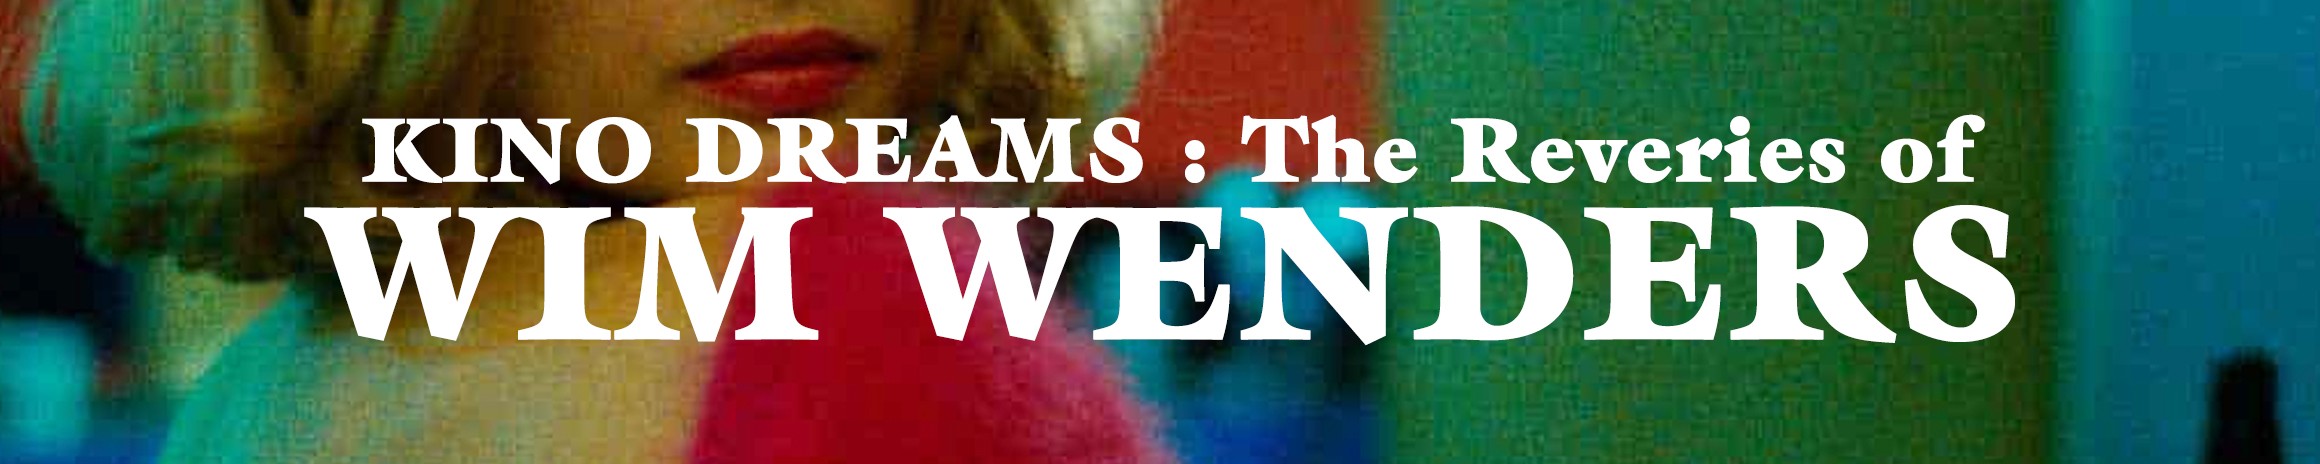 KINO DREAMS : The Reveries of Wim Wenders